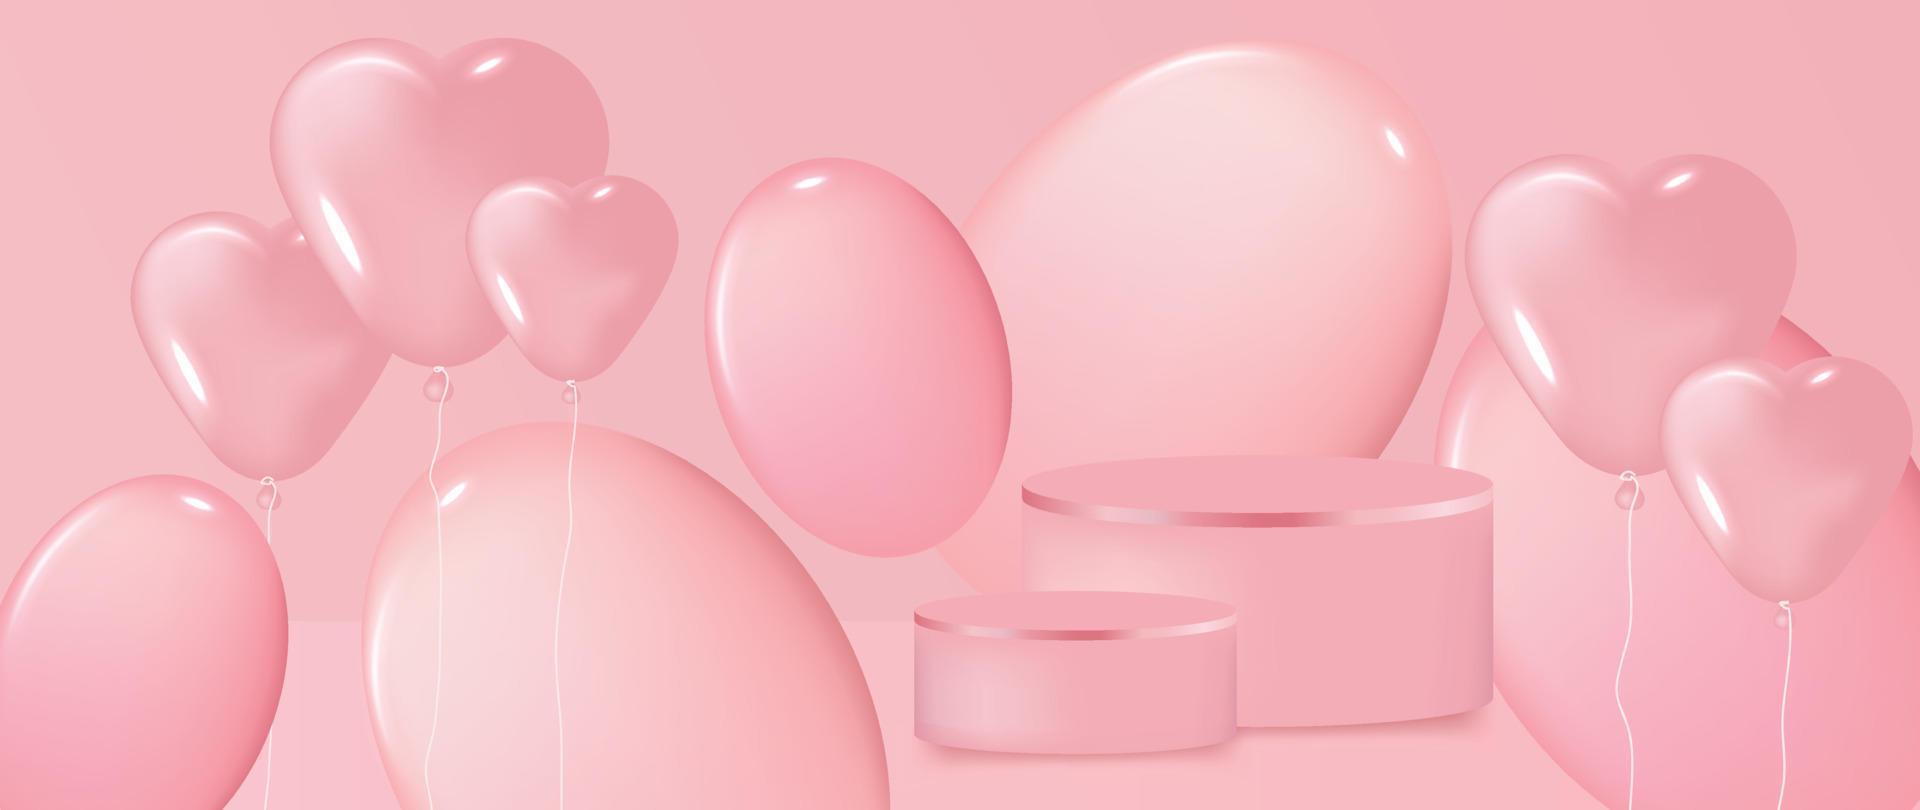 glücklicher valentinstag-konzeptvektor. abstrakte 3d-komposition dekorieren mit podium und glänzendem süßem rosa herzballonhintergrund. Design für Banner, Modell, Produktpräsentation, Anzeigen, Marketing. vektor